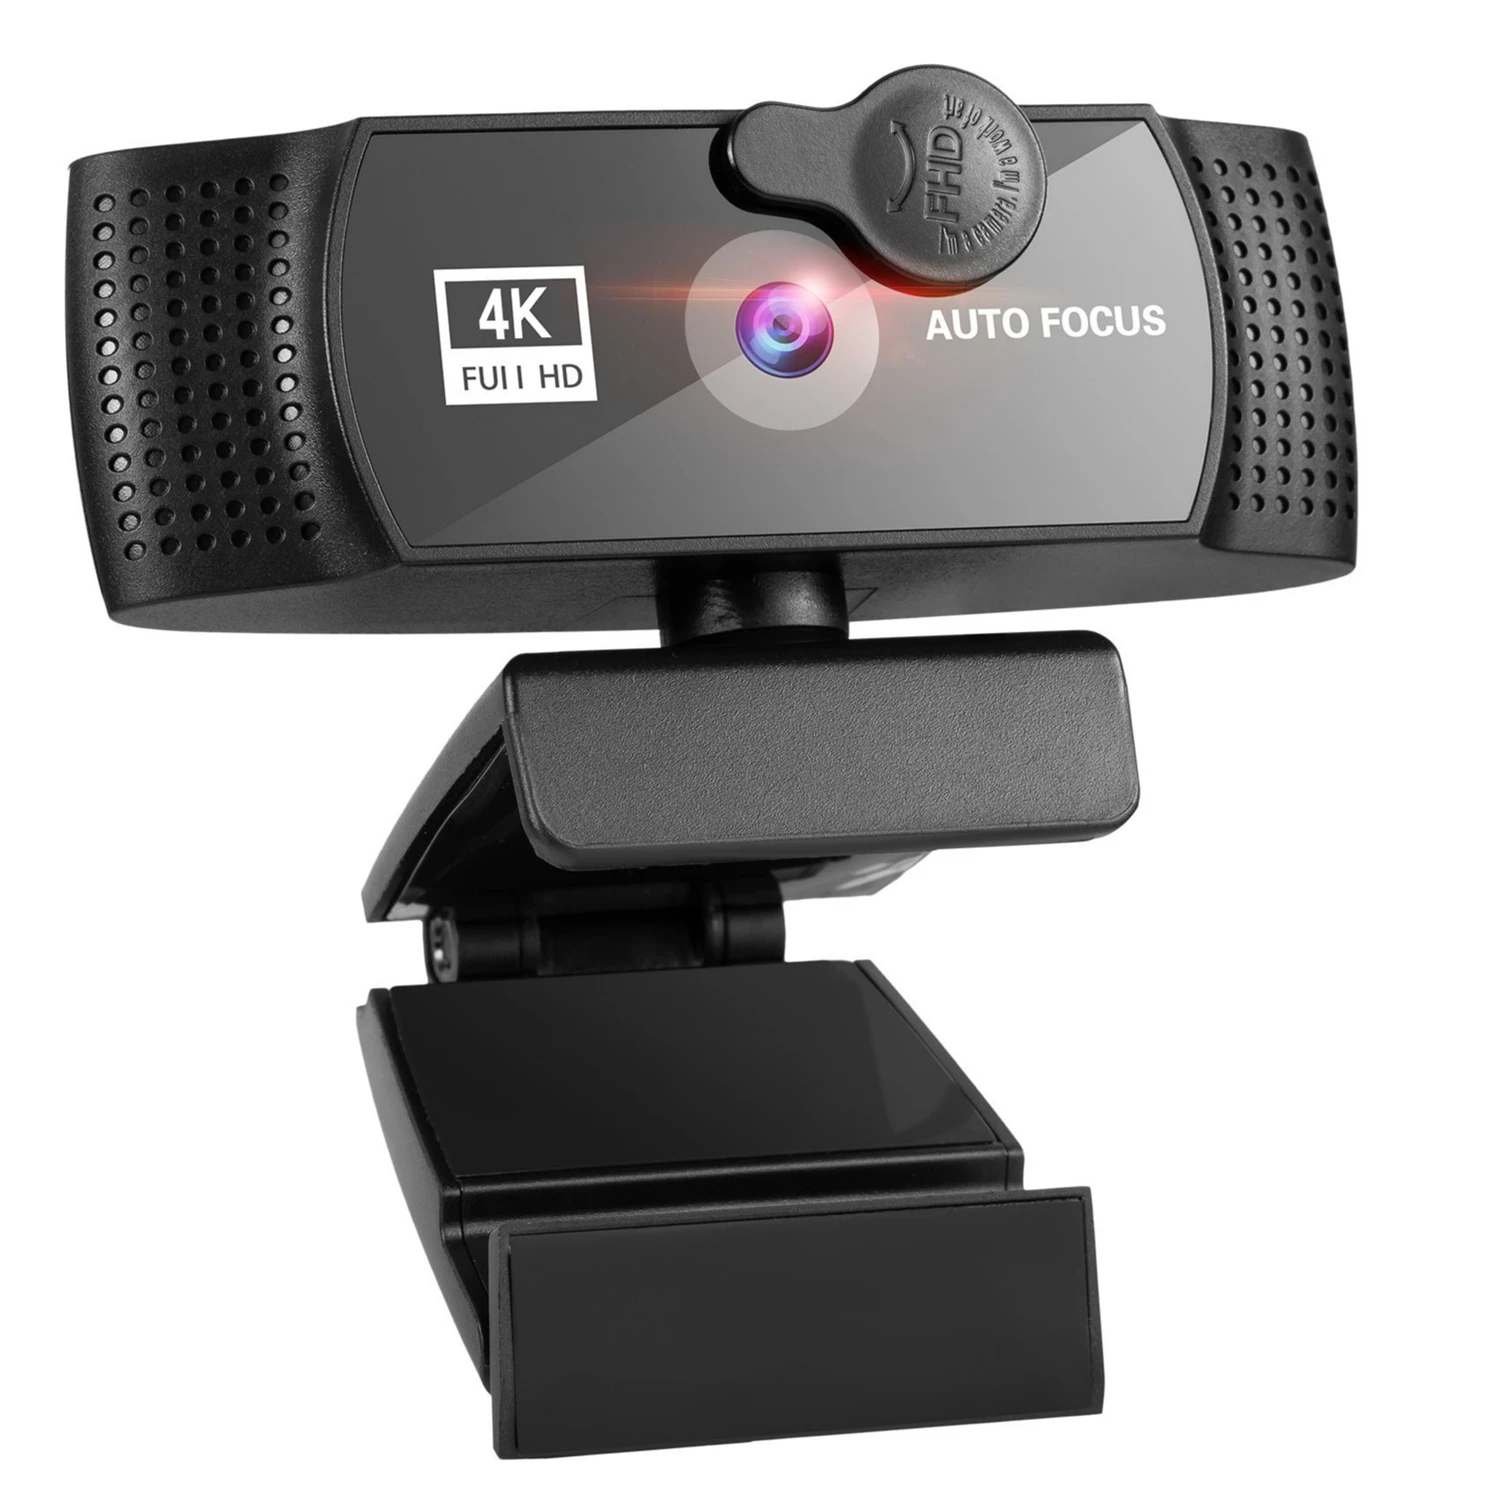 

Веб-камера Full HD 1080P Beauty Автофокус с сетевым микрофоном Live 120 ° Широкоугольная веб-камера для видео Компьютер Ноутбук Рабочий стол YouTube